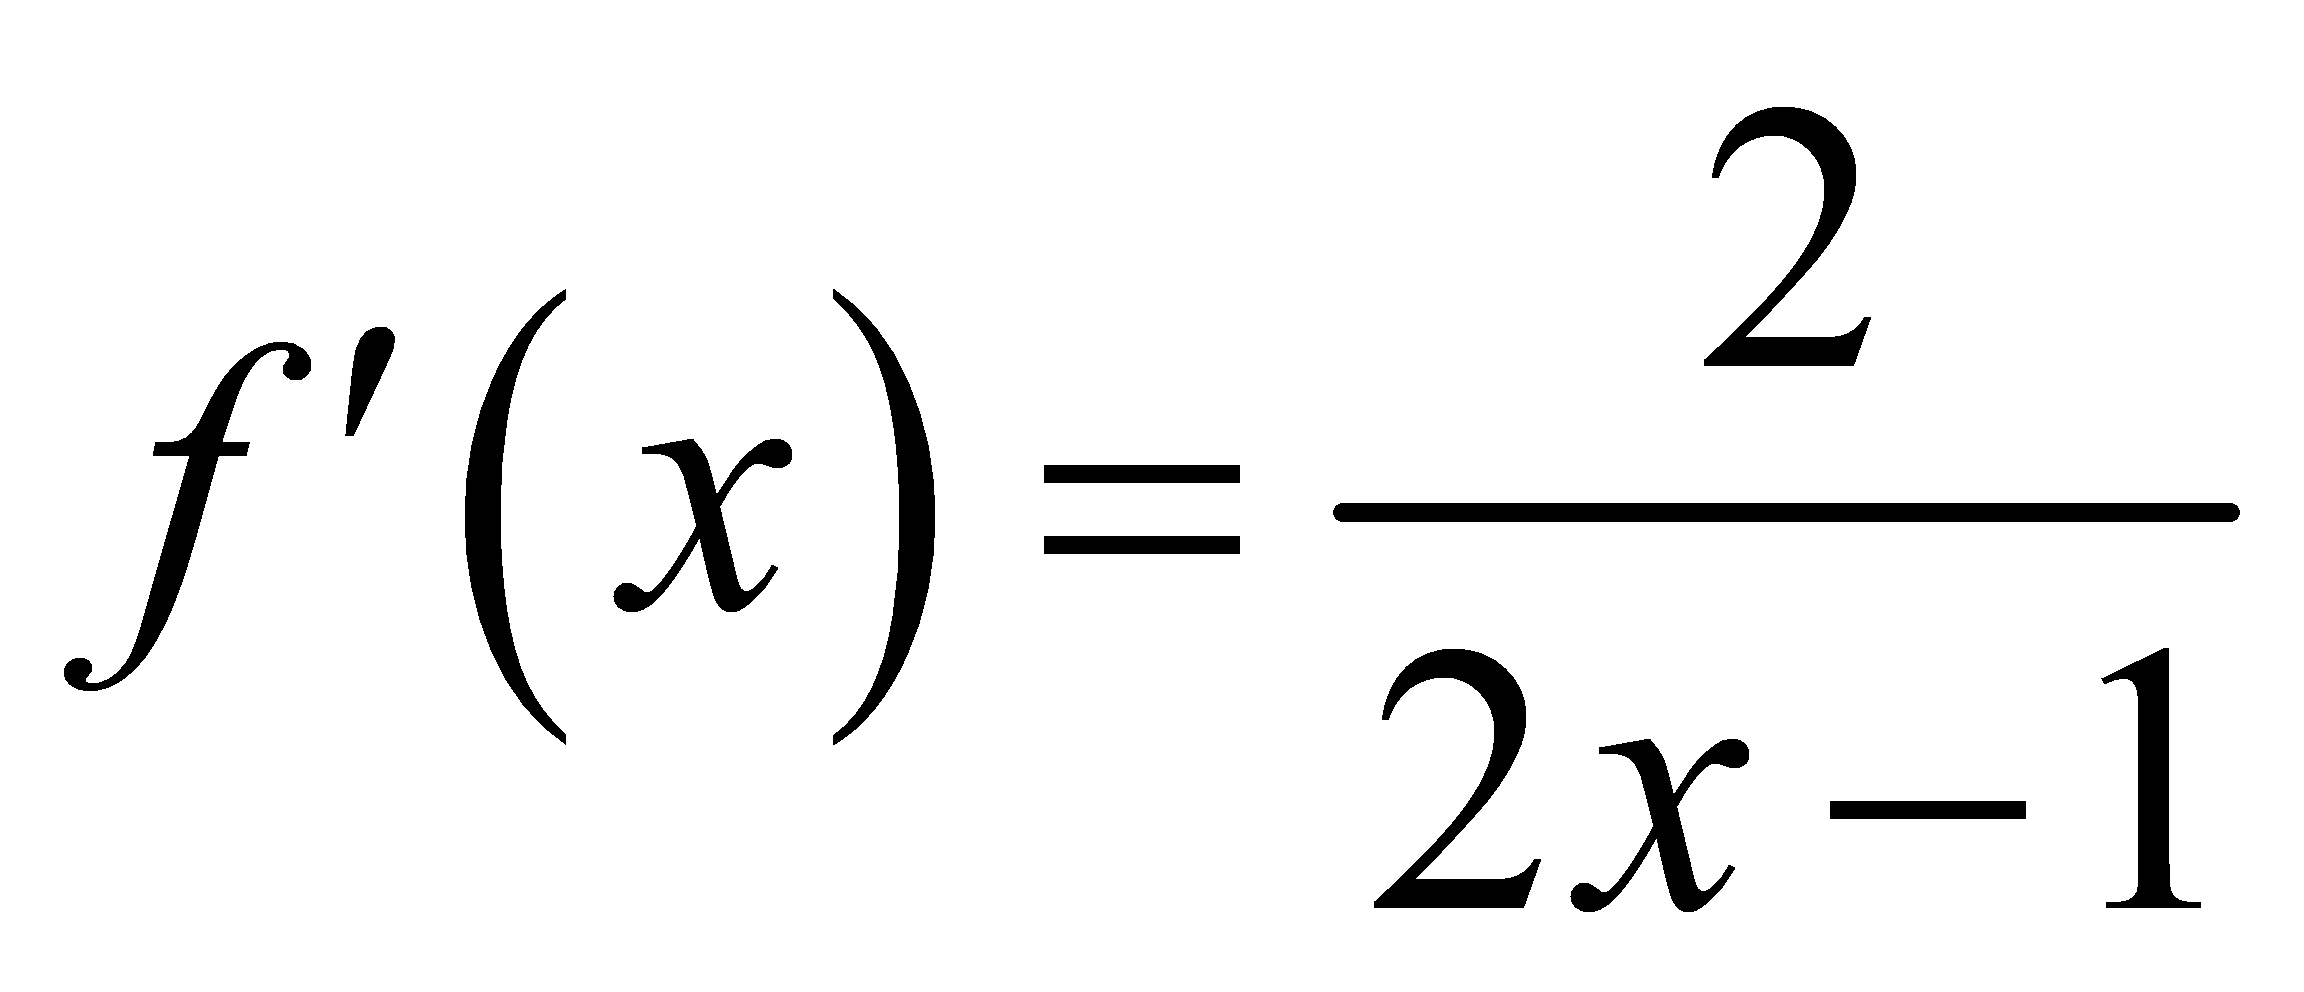 формула маклорена с остаточный член в форме лагранжа фото 116